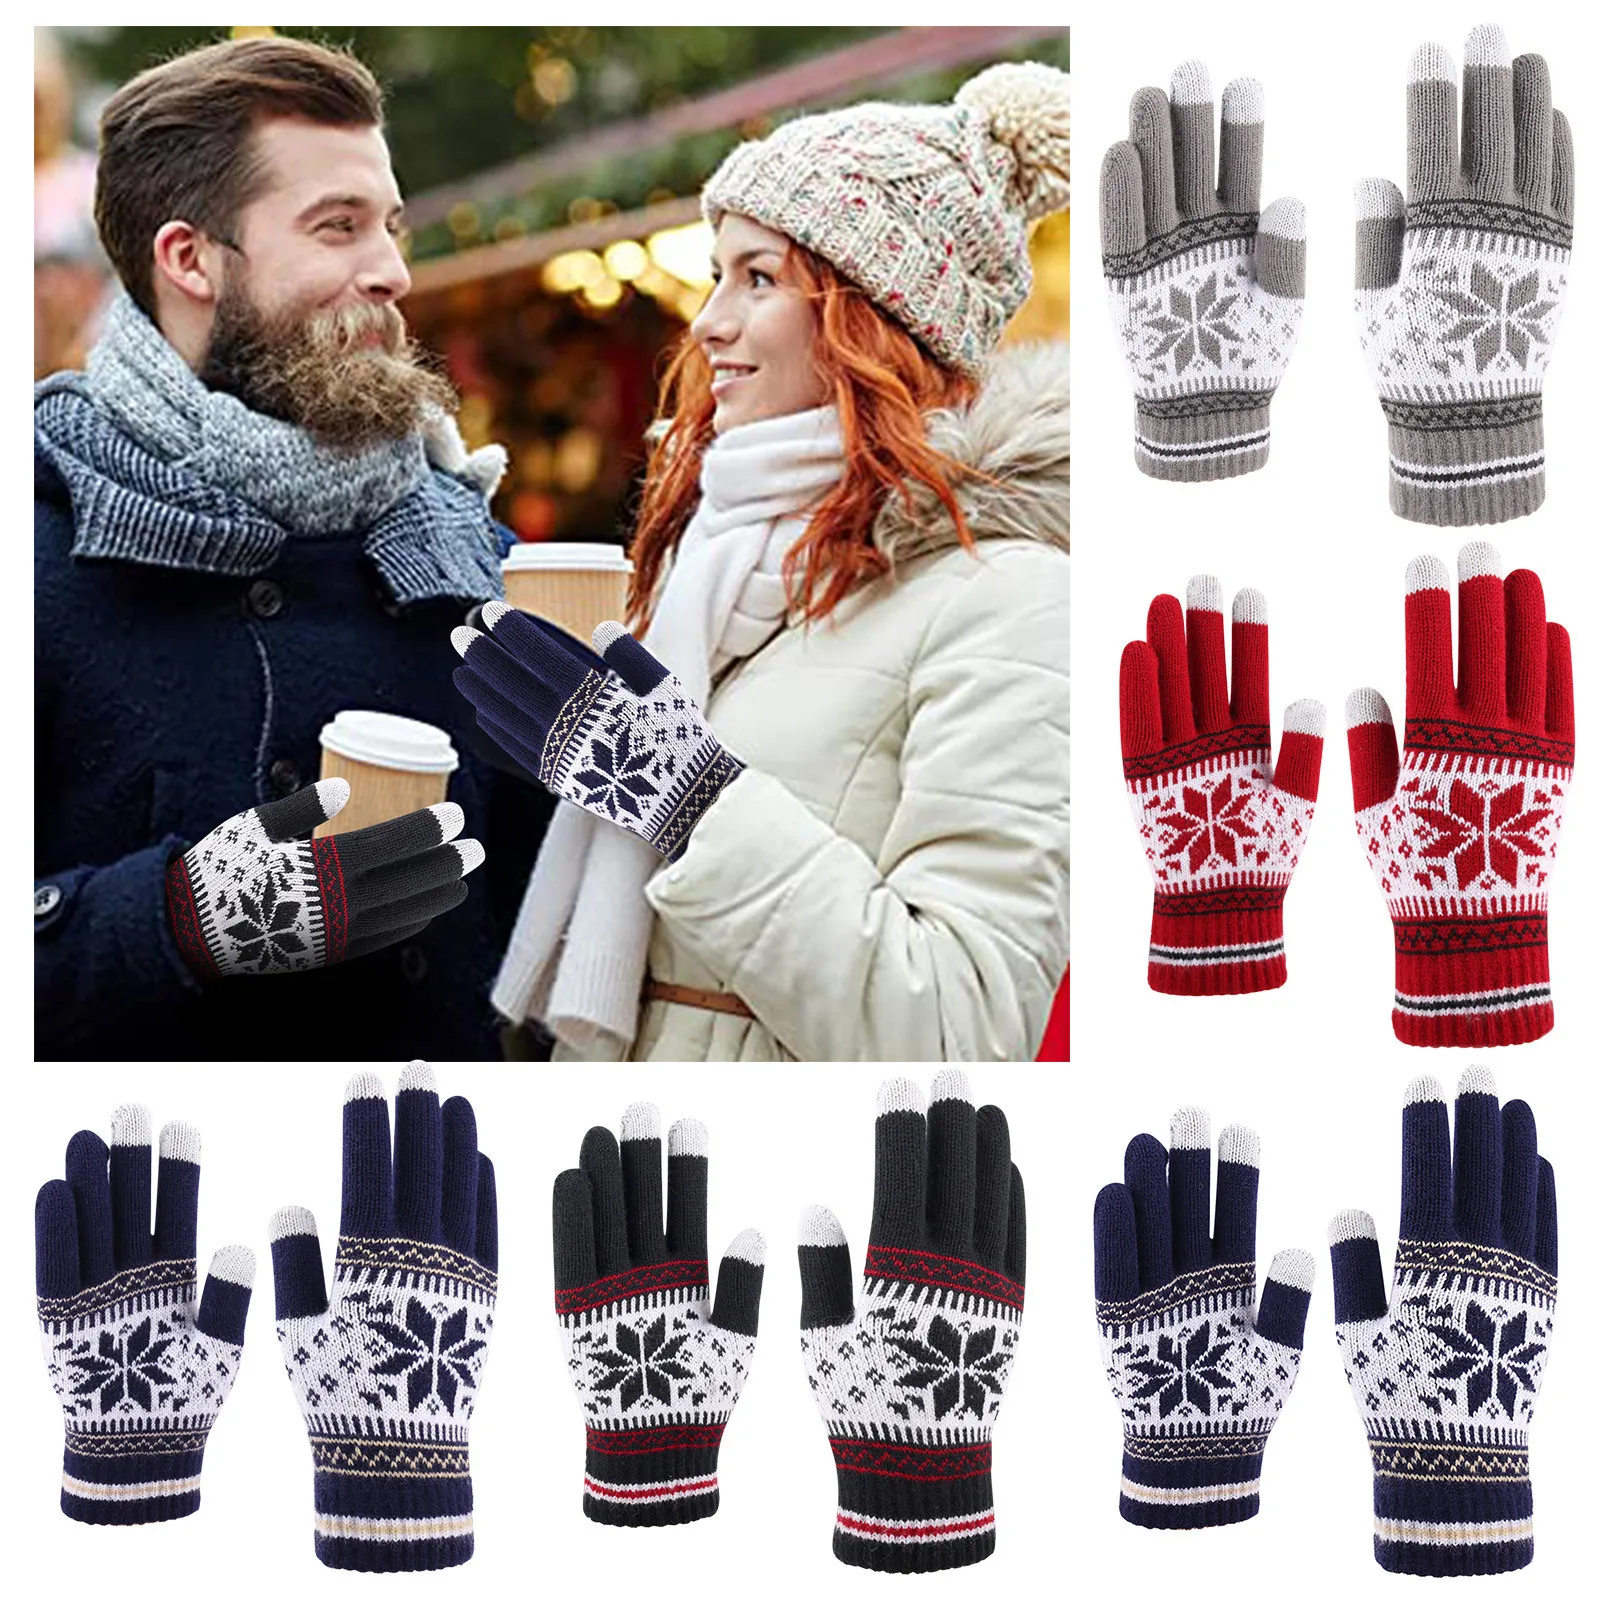 

Женские перчатки с принтом снежинок, оригинальные вязаные перчатки для экрана, толстые и теплые зимние перчатки для взрослых